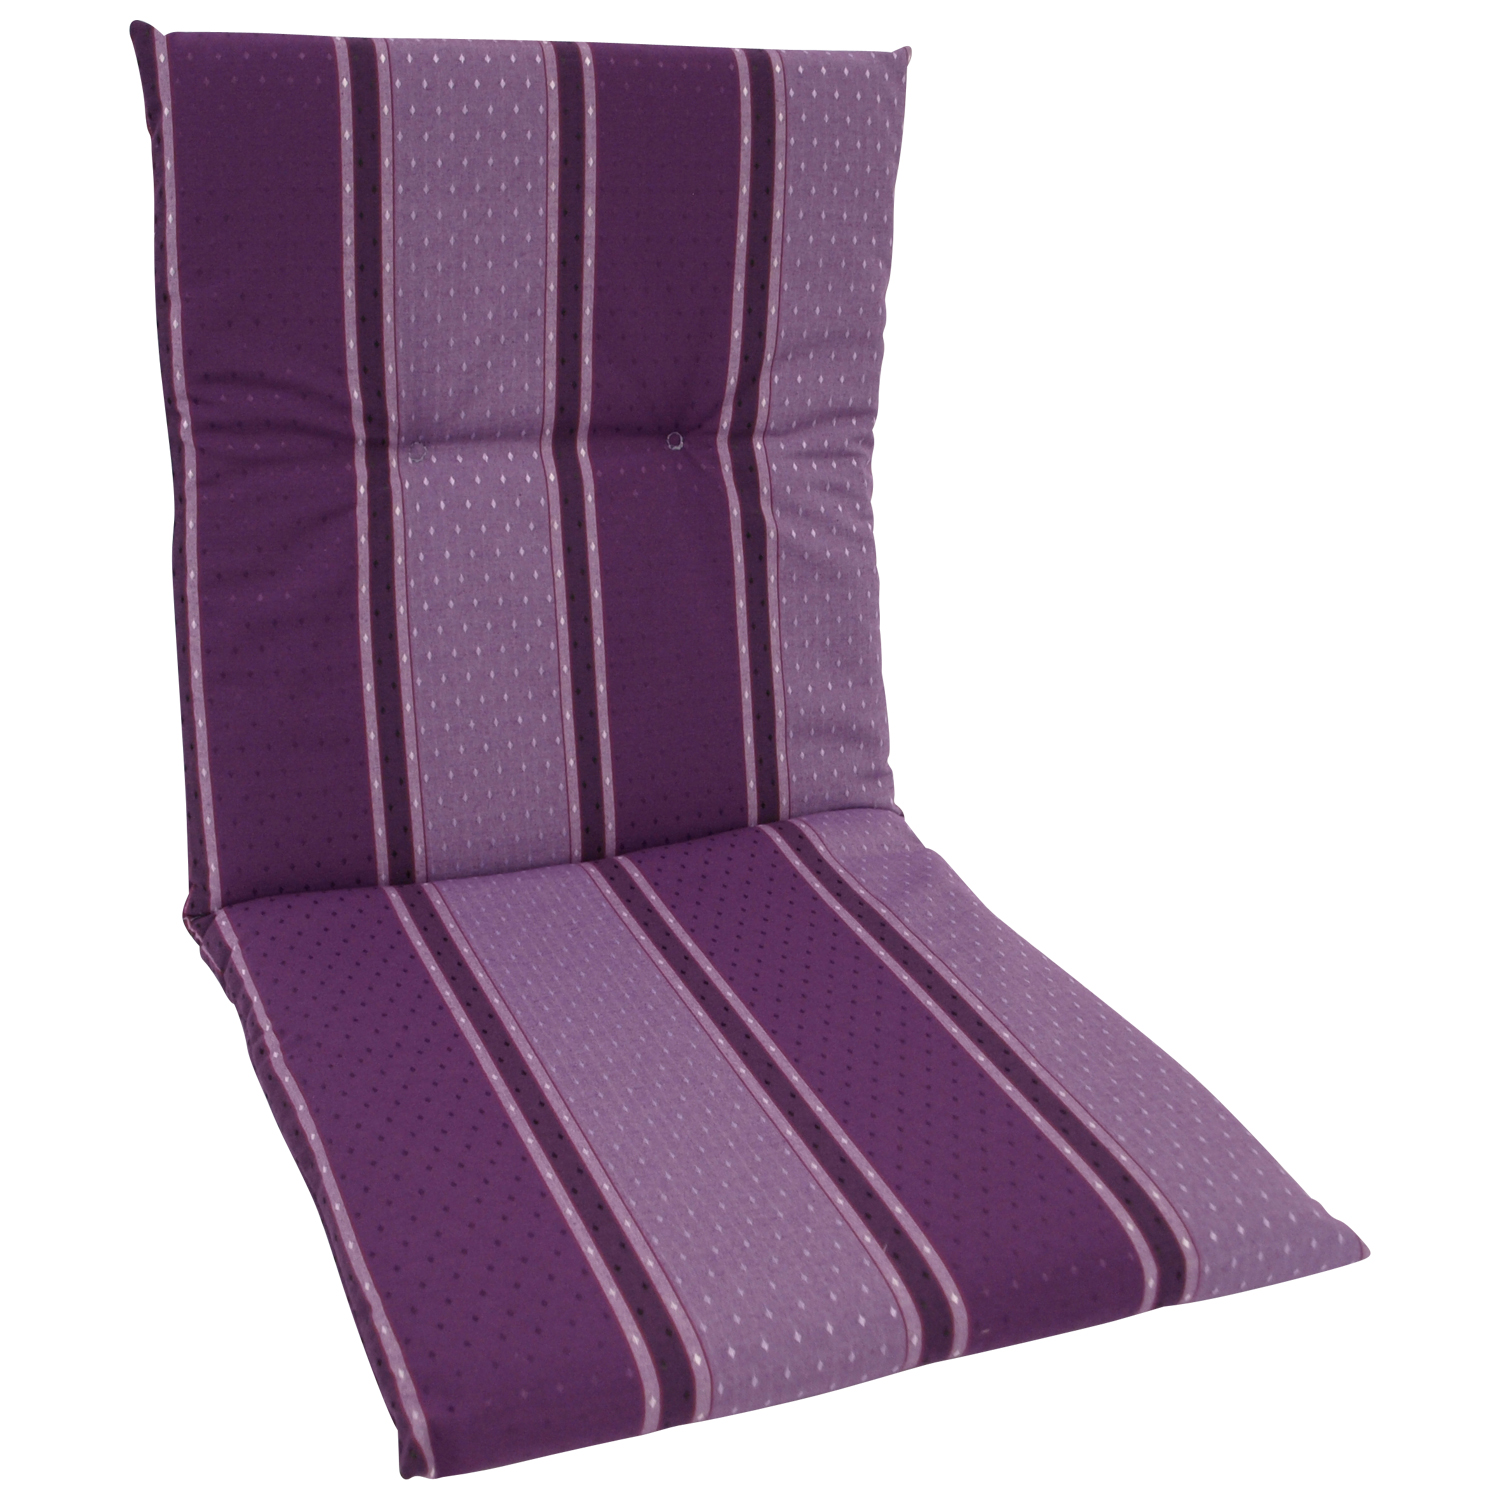 Auflage BERN für Sessel, violett gestreift